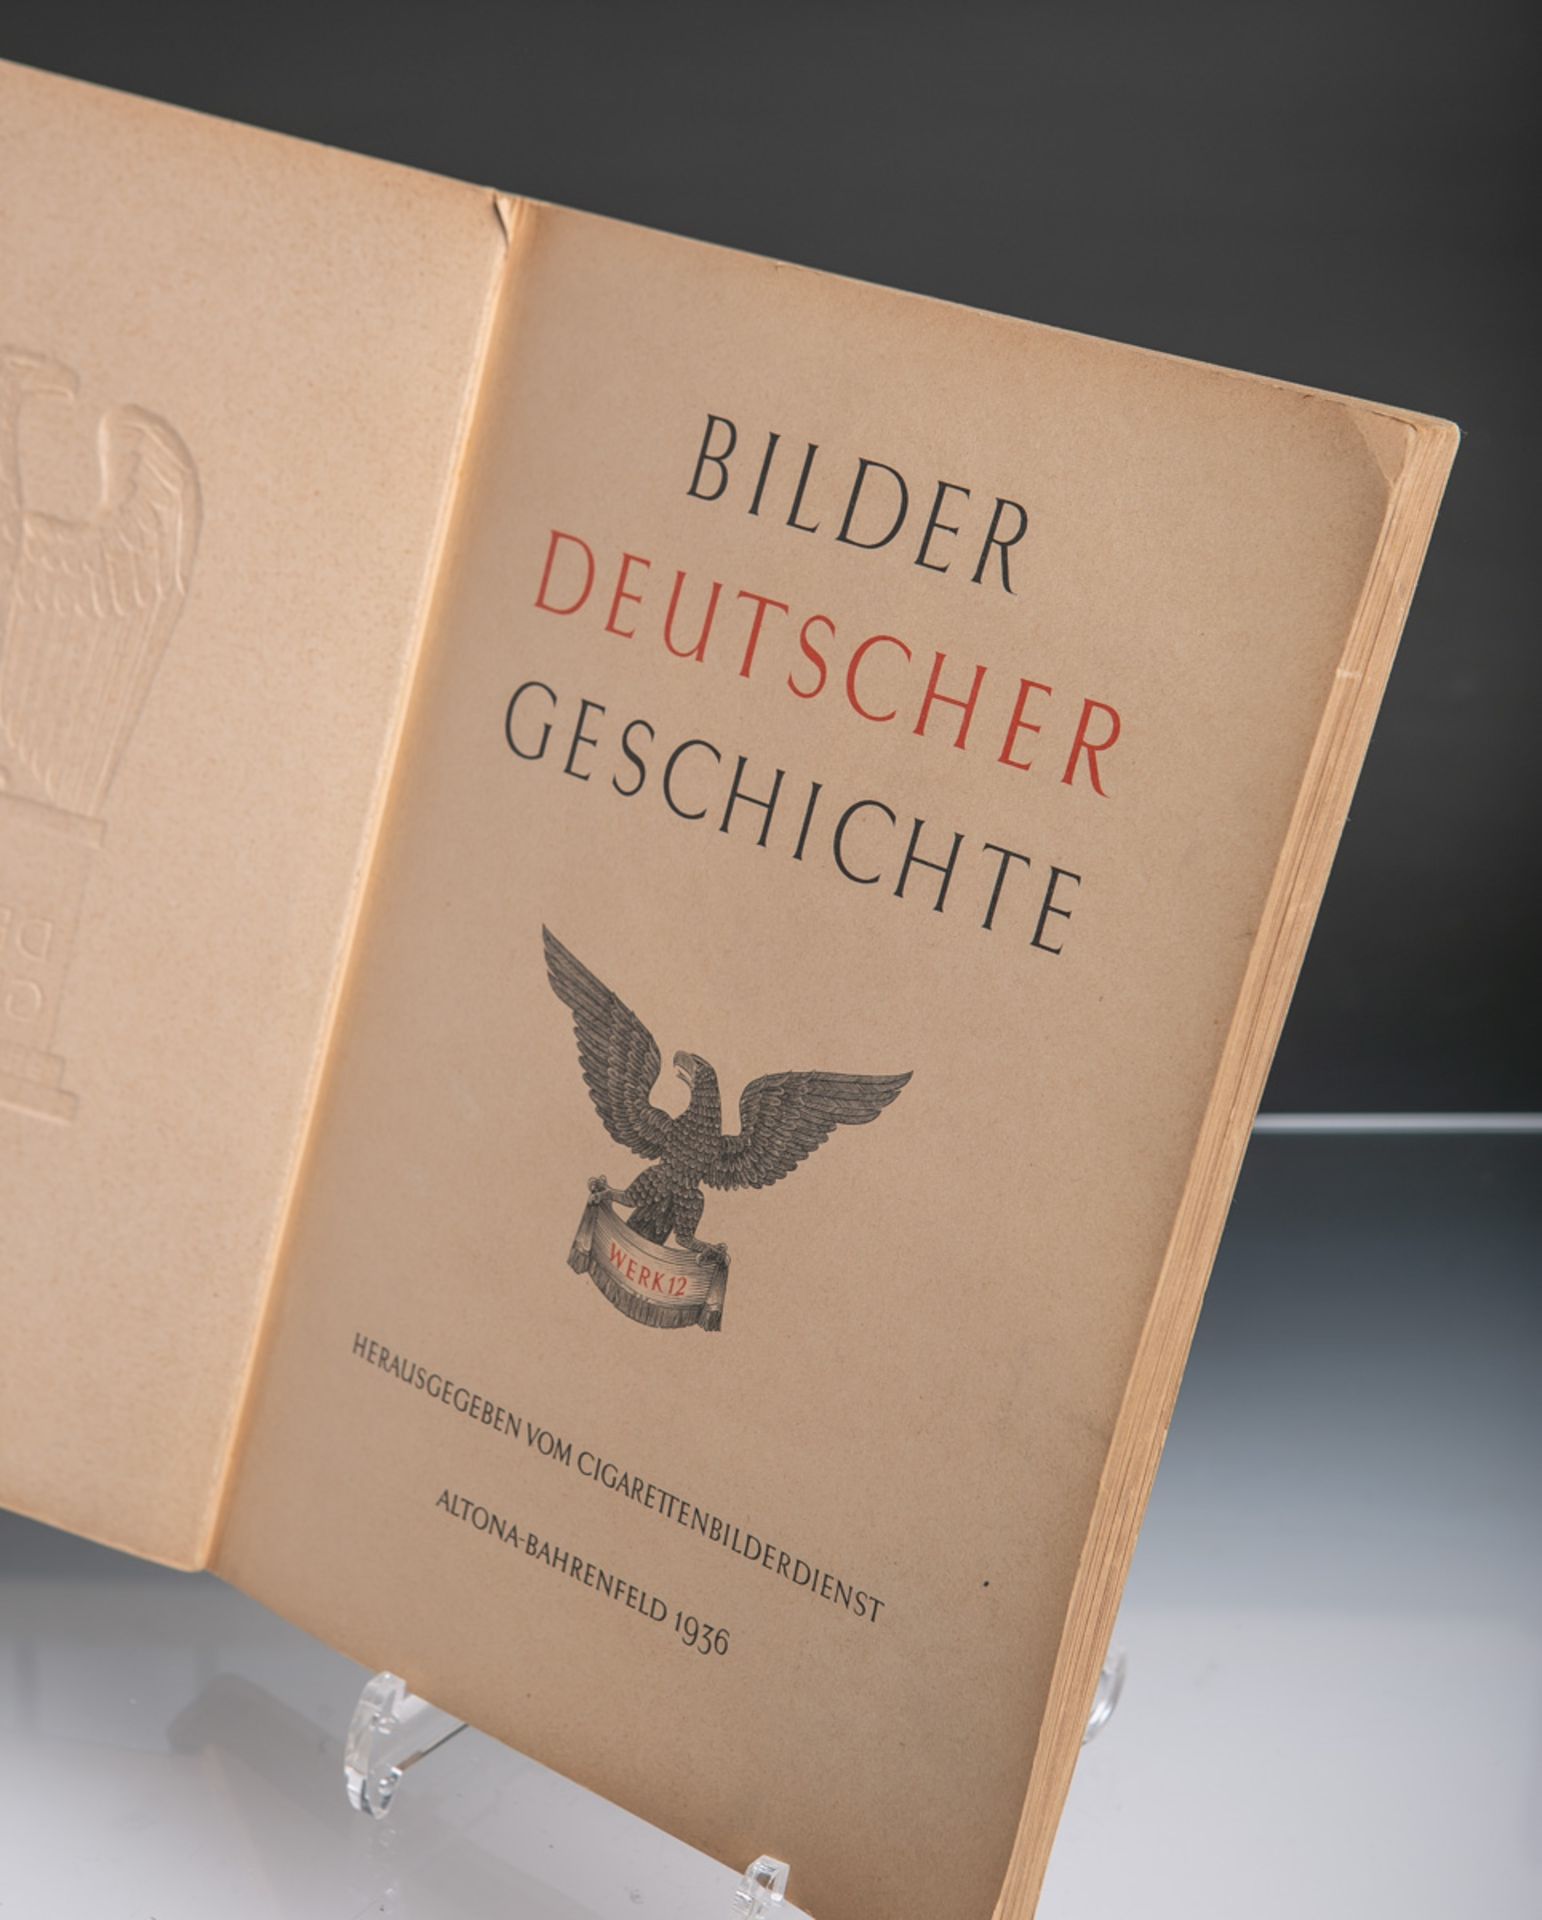 Zigarettenbilderalbum "Bilder Deutscher Geschichte" (1936)